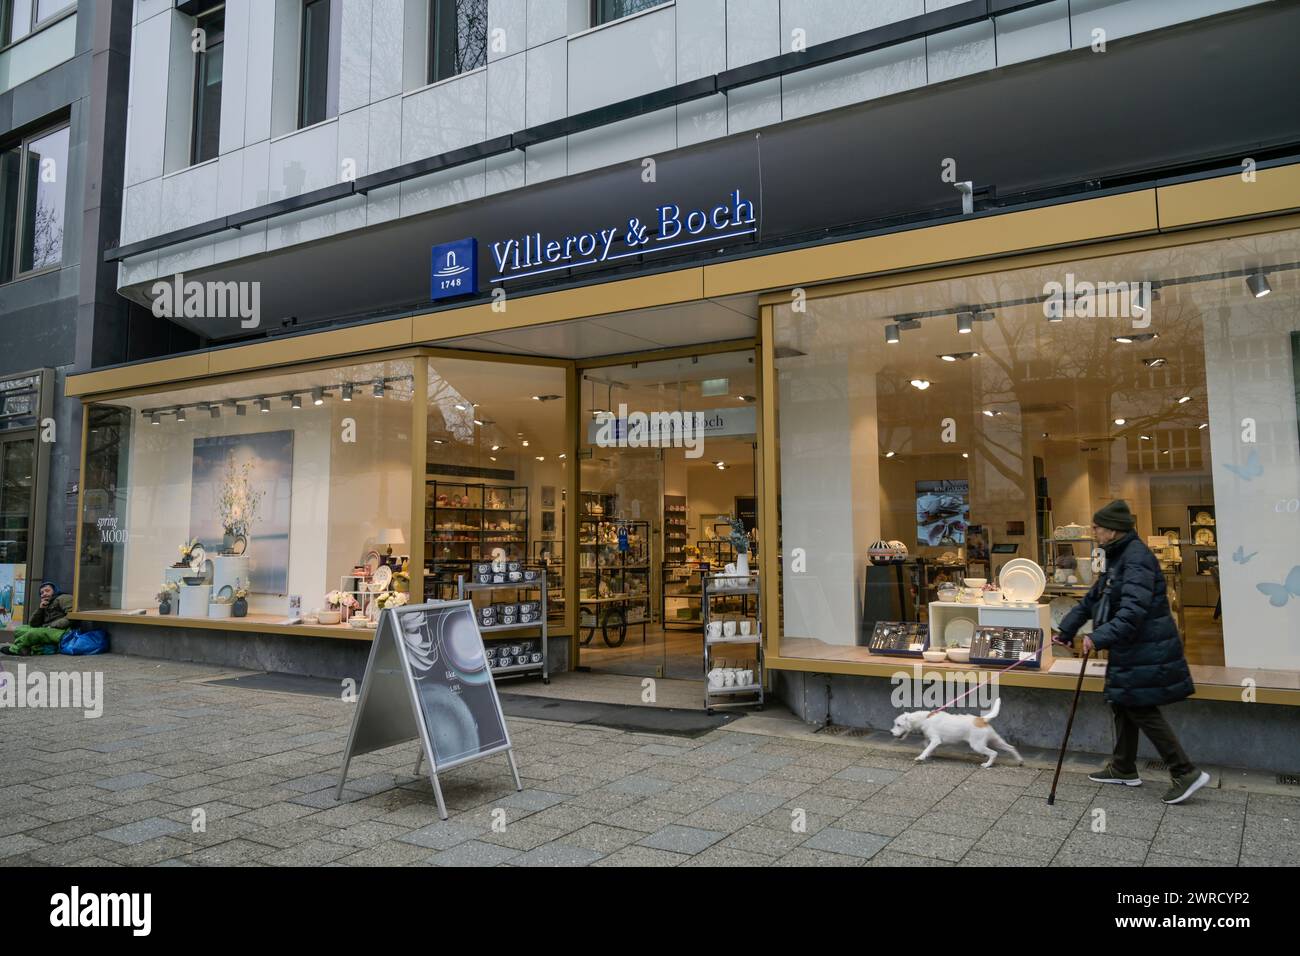 Villeroy & Boch, Geschäft, Kurfürstendamm, Charlottenburg, Berlin, Deutschland Stock Photo